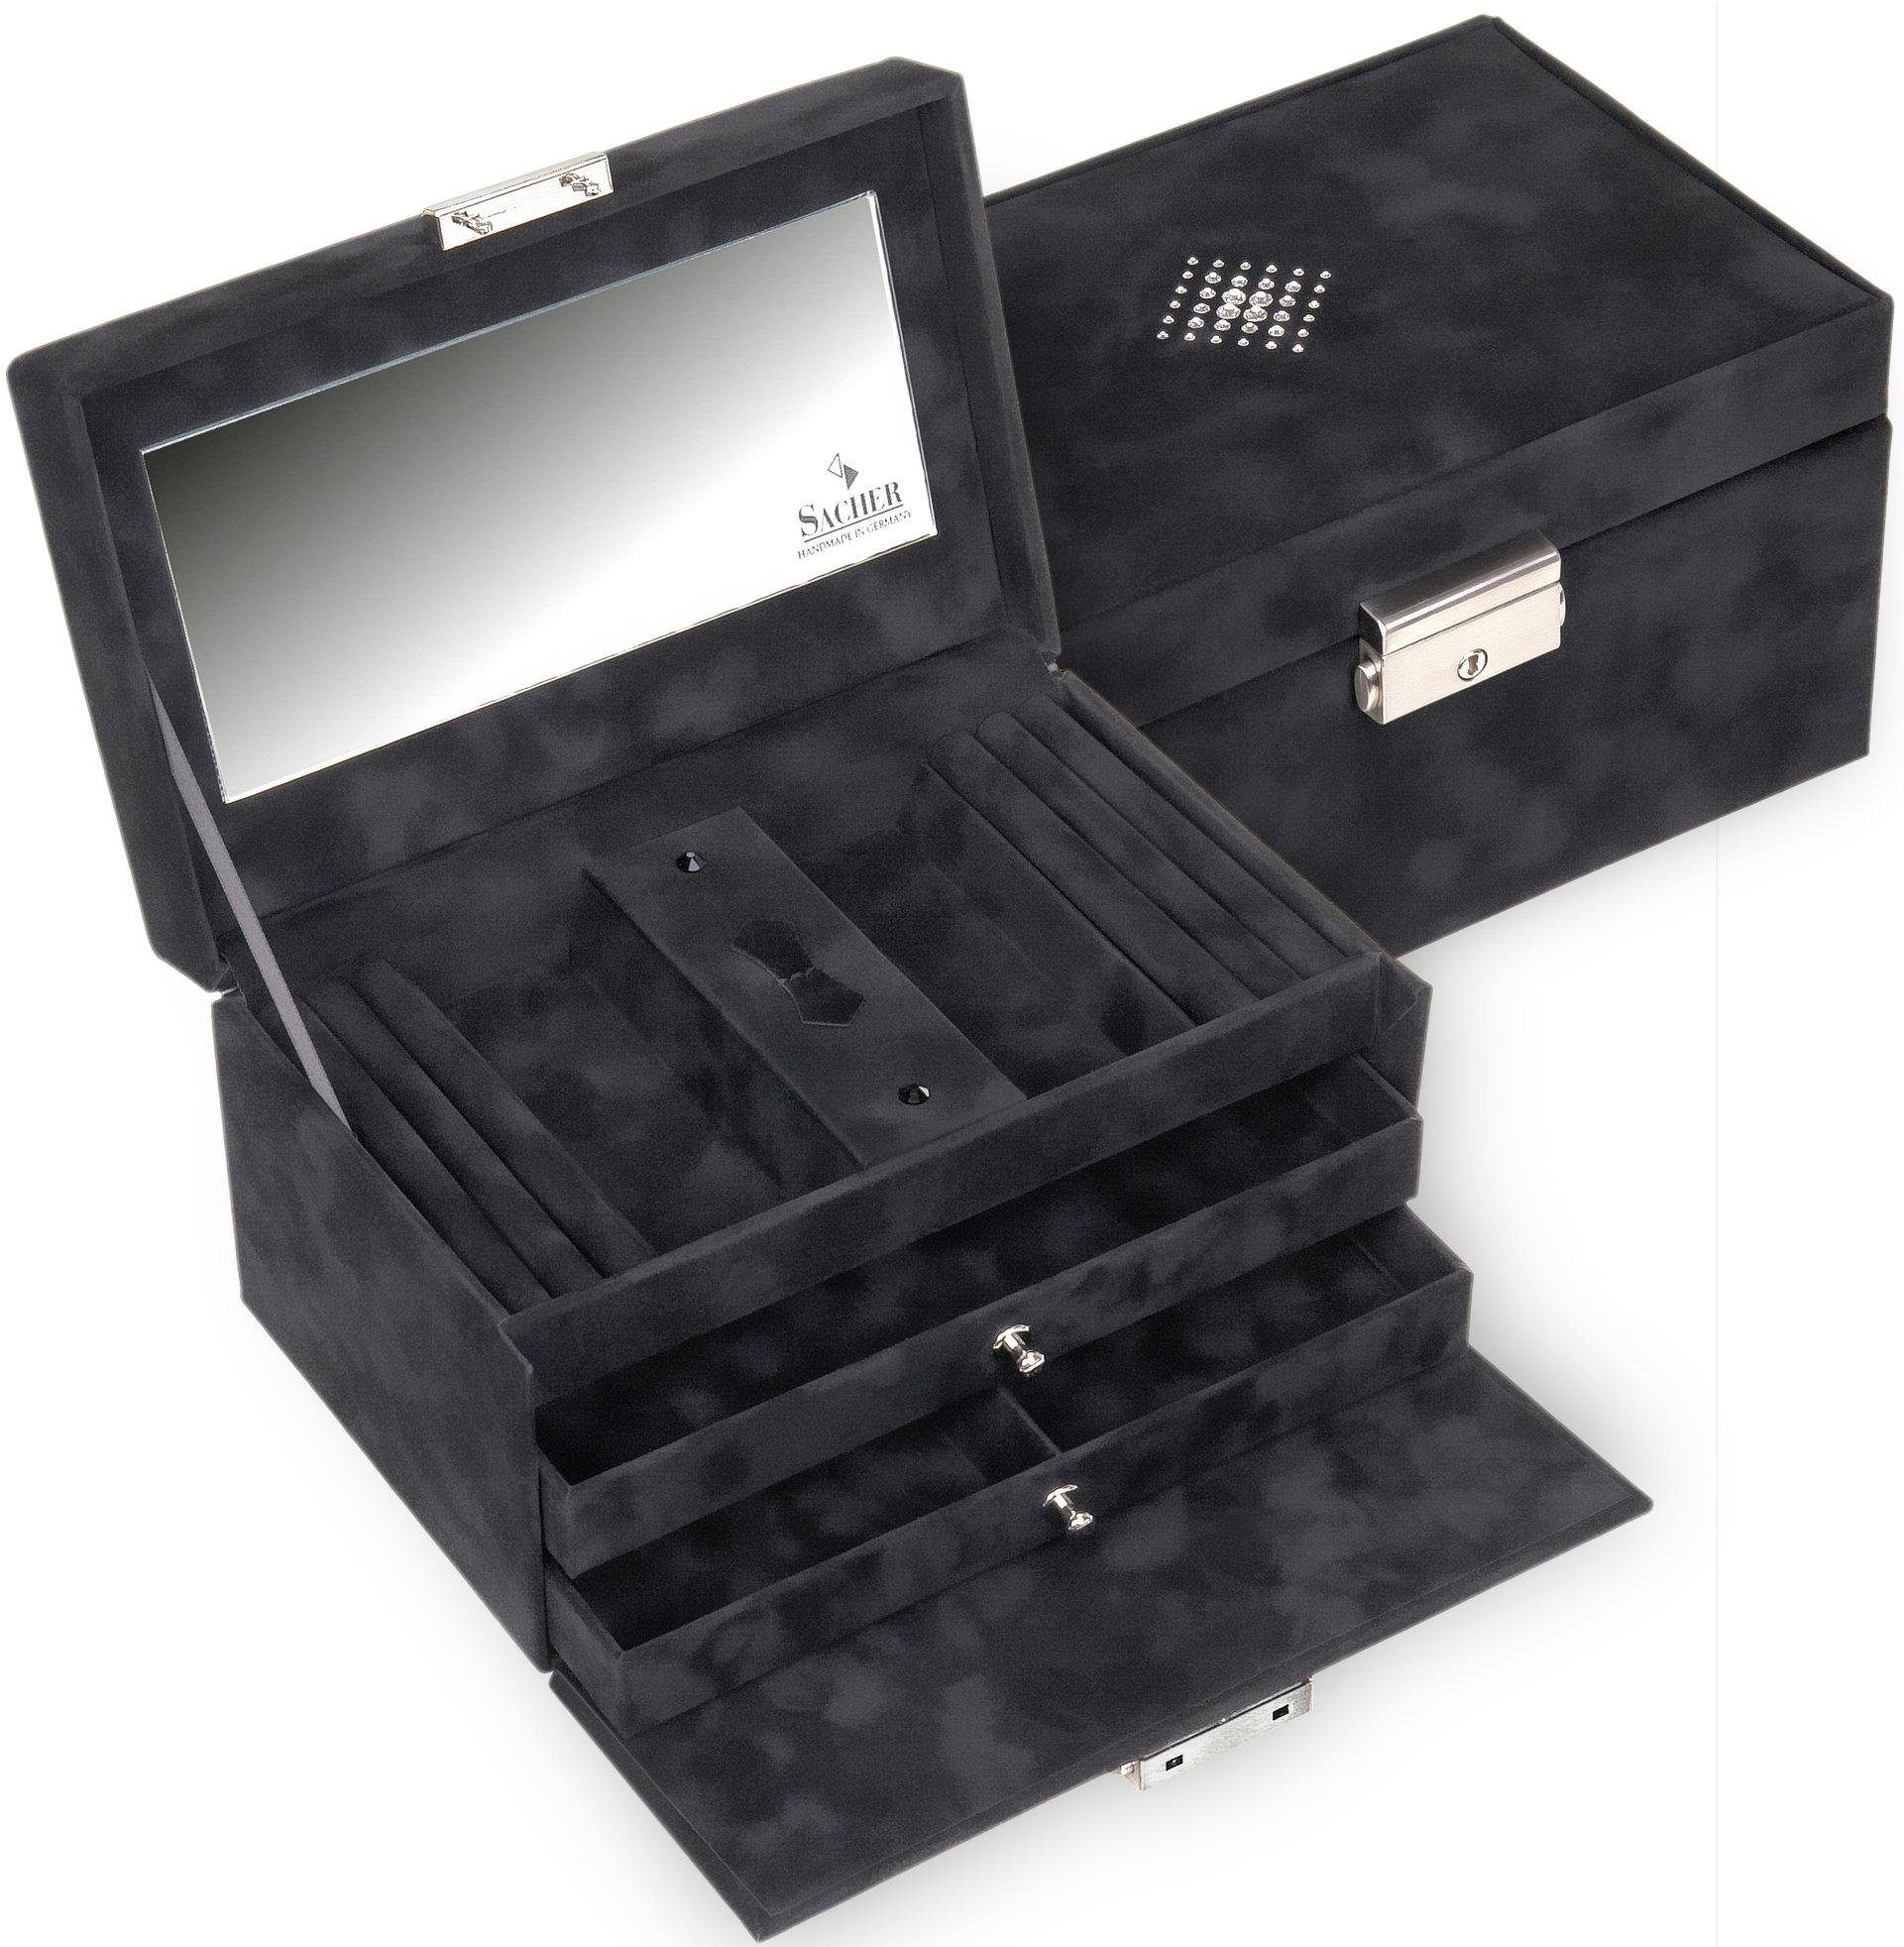 begrenzte Zeit verfügbar Sacher Schmuckkoffer Eva/Crystalo, mit Kristallen, Made in 27503040404, schwarz Germany